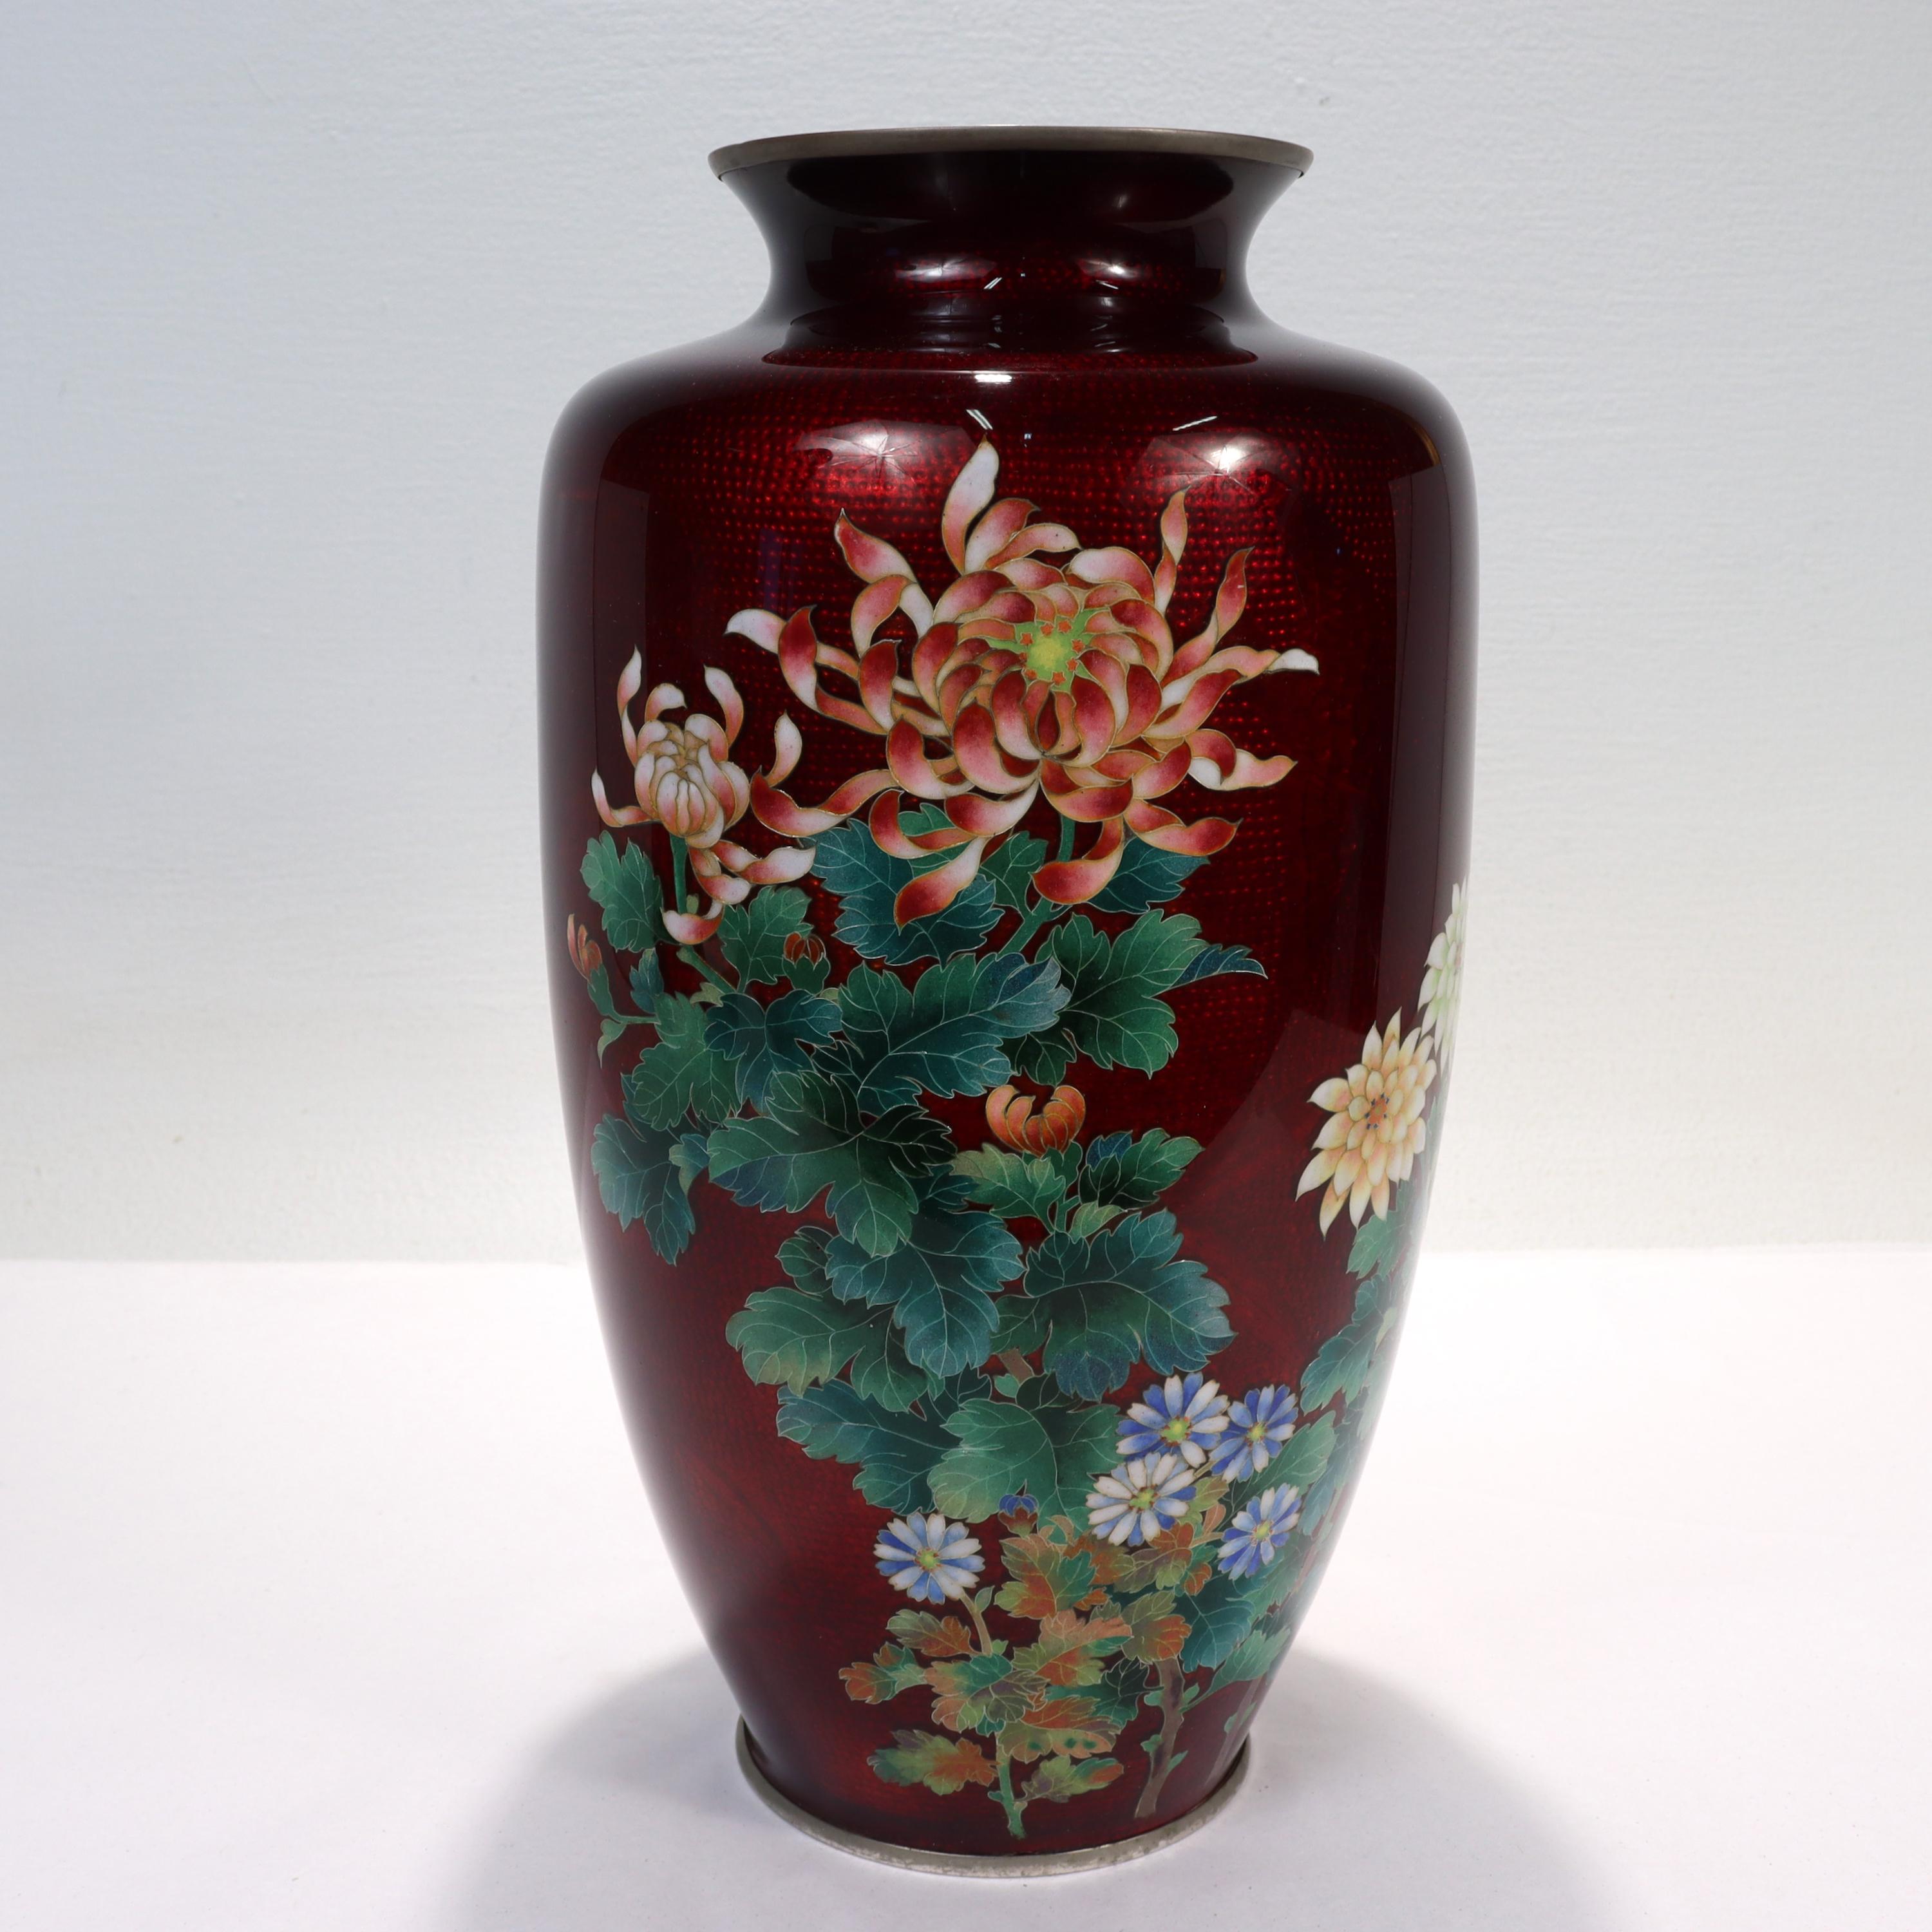 Vase ancien en émail japonais.

Avec des fleurs en cloisonné sur un fond de ginbari rouge.

La technique du ginbari (similaire à l'émail guilloché) consiste à inonder d'émail transparent une surface métallique à motifs. Cela crée un effet miroir